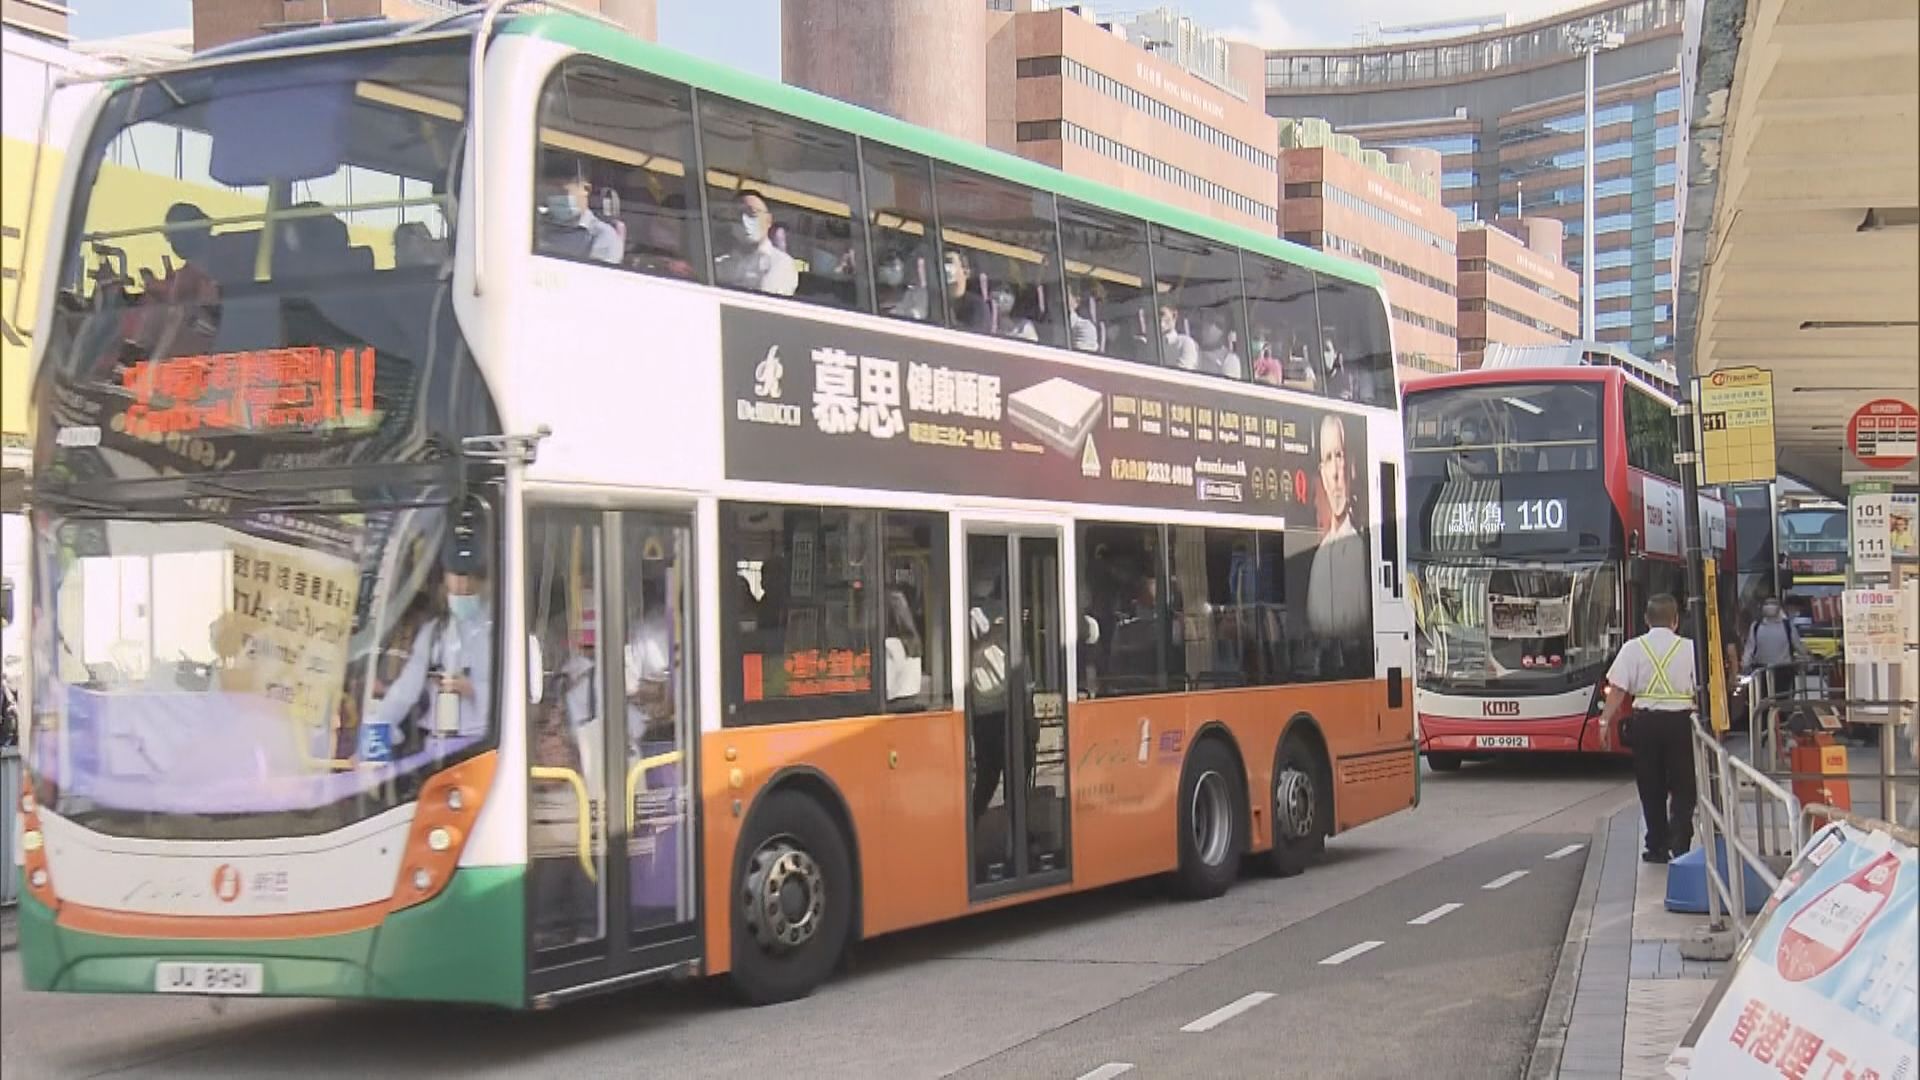 【車費不變】3巴士專營權延至2033年  新巴及城巴合併